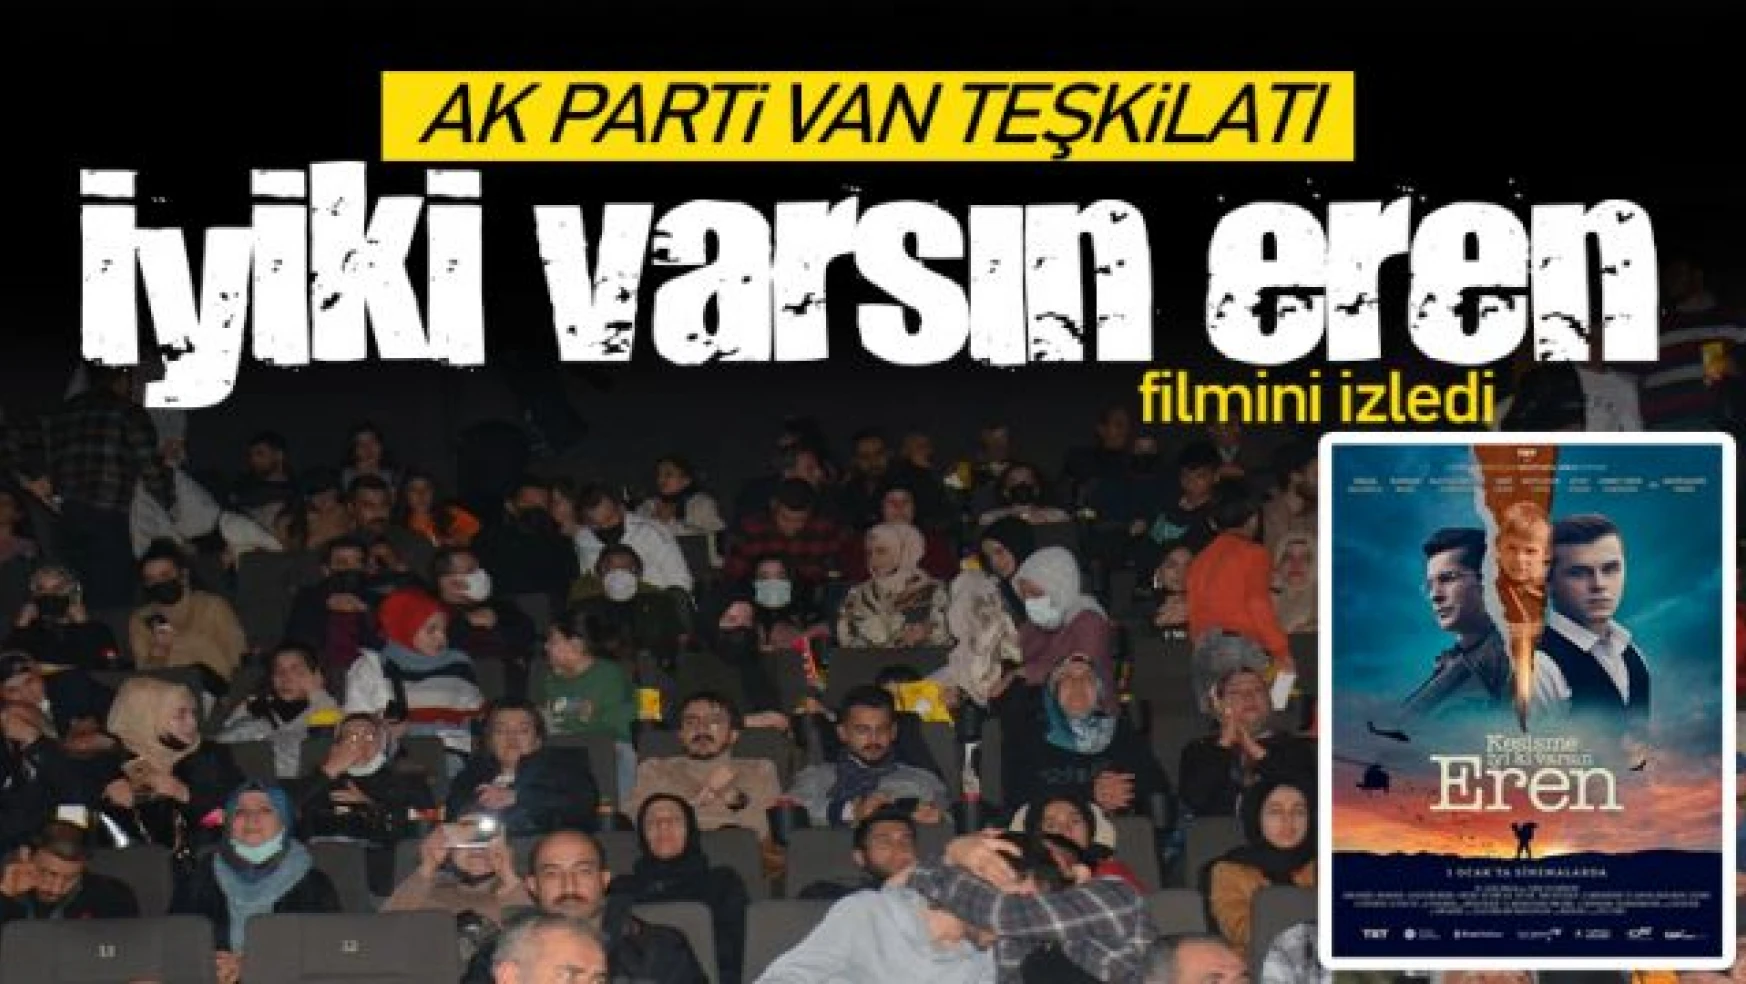 Van AK Parti teşkilatı, 'İyiki varsın Eren' filmini izledi